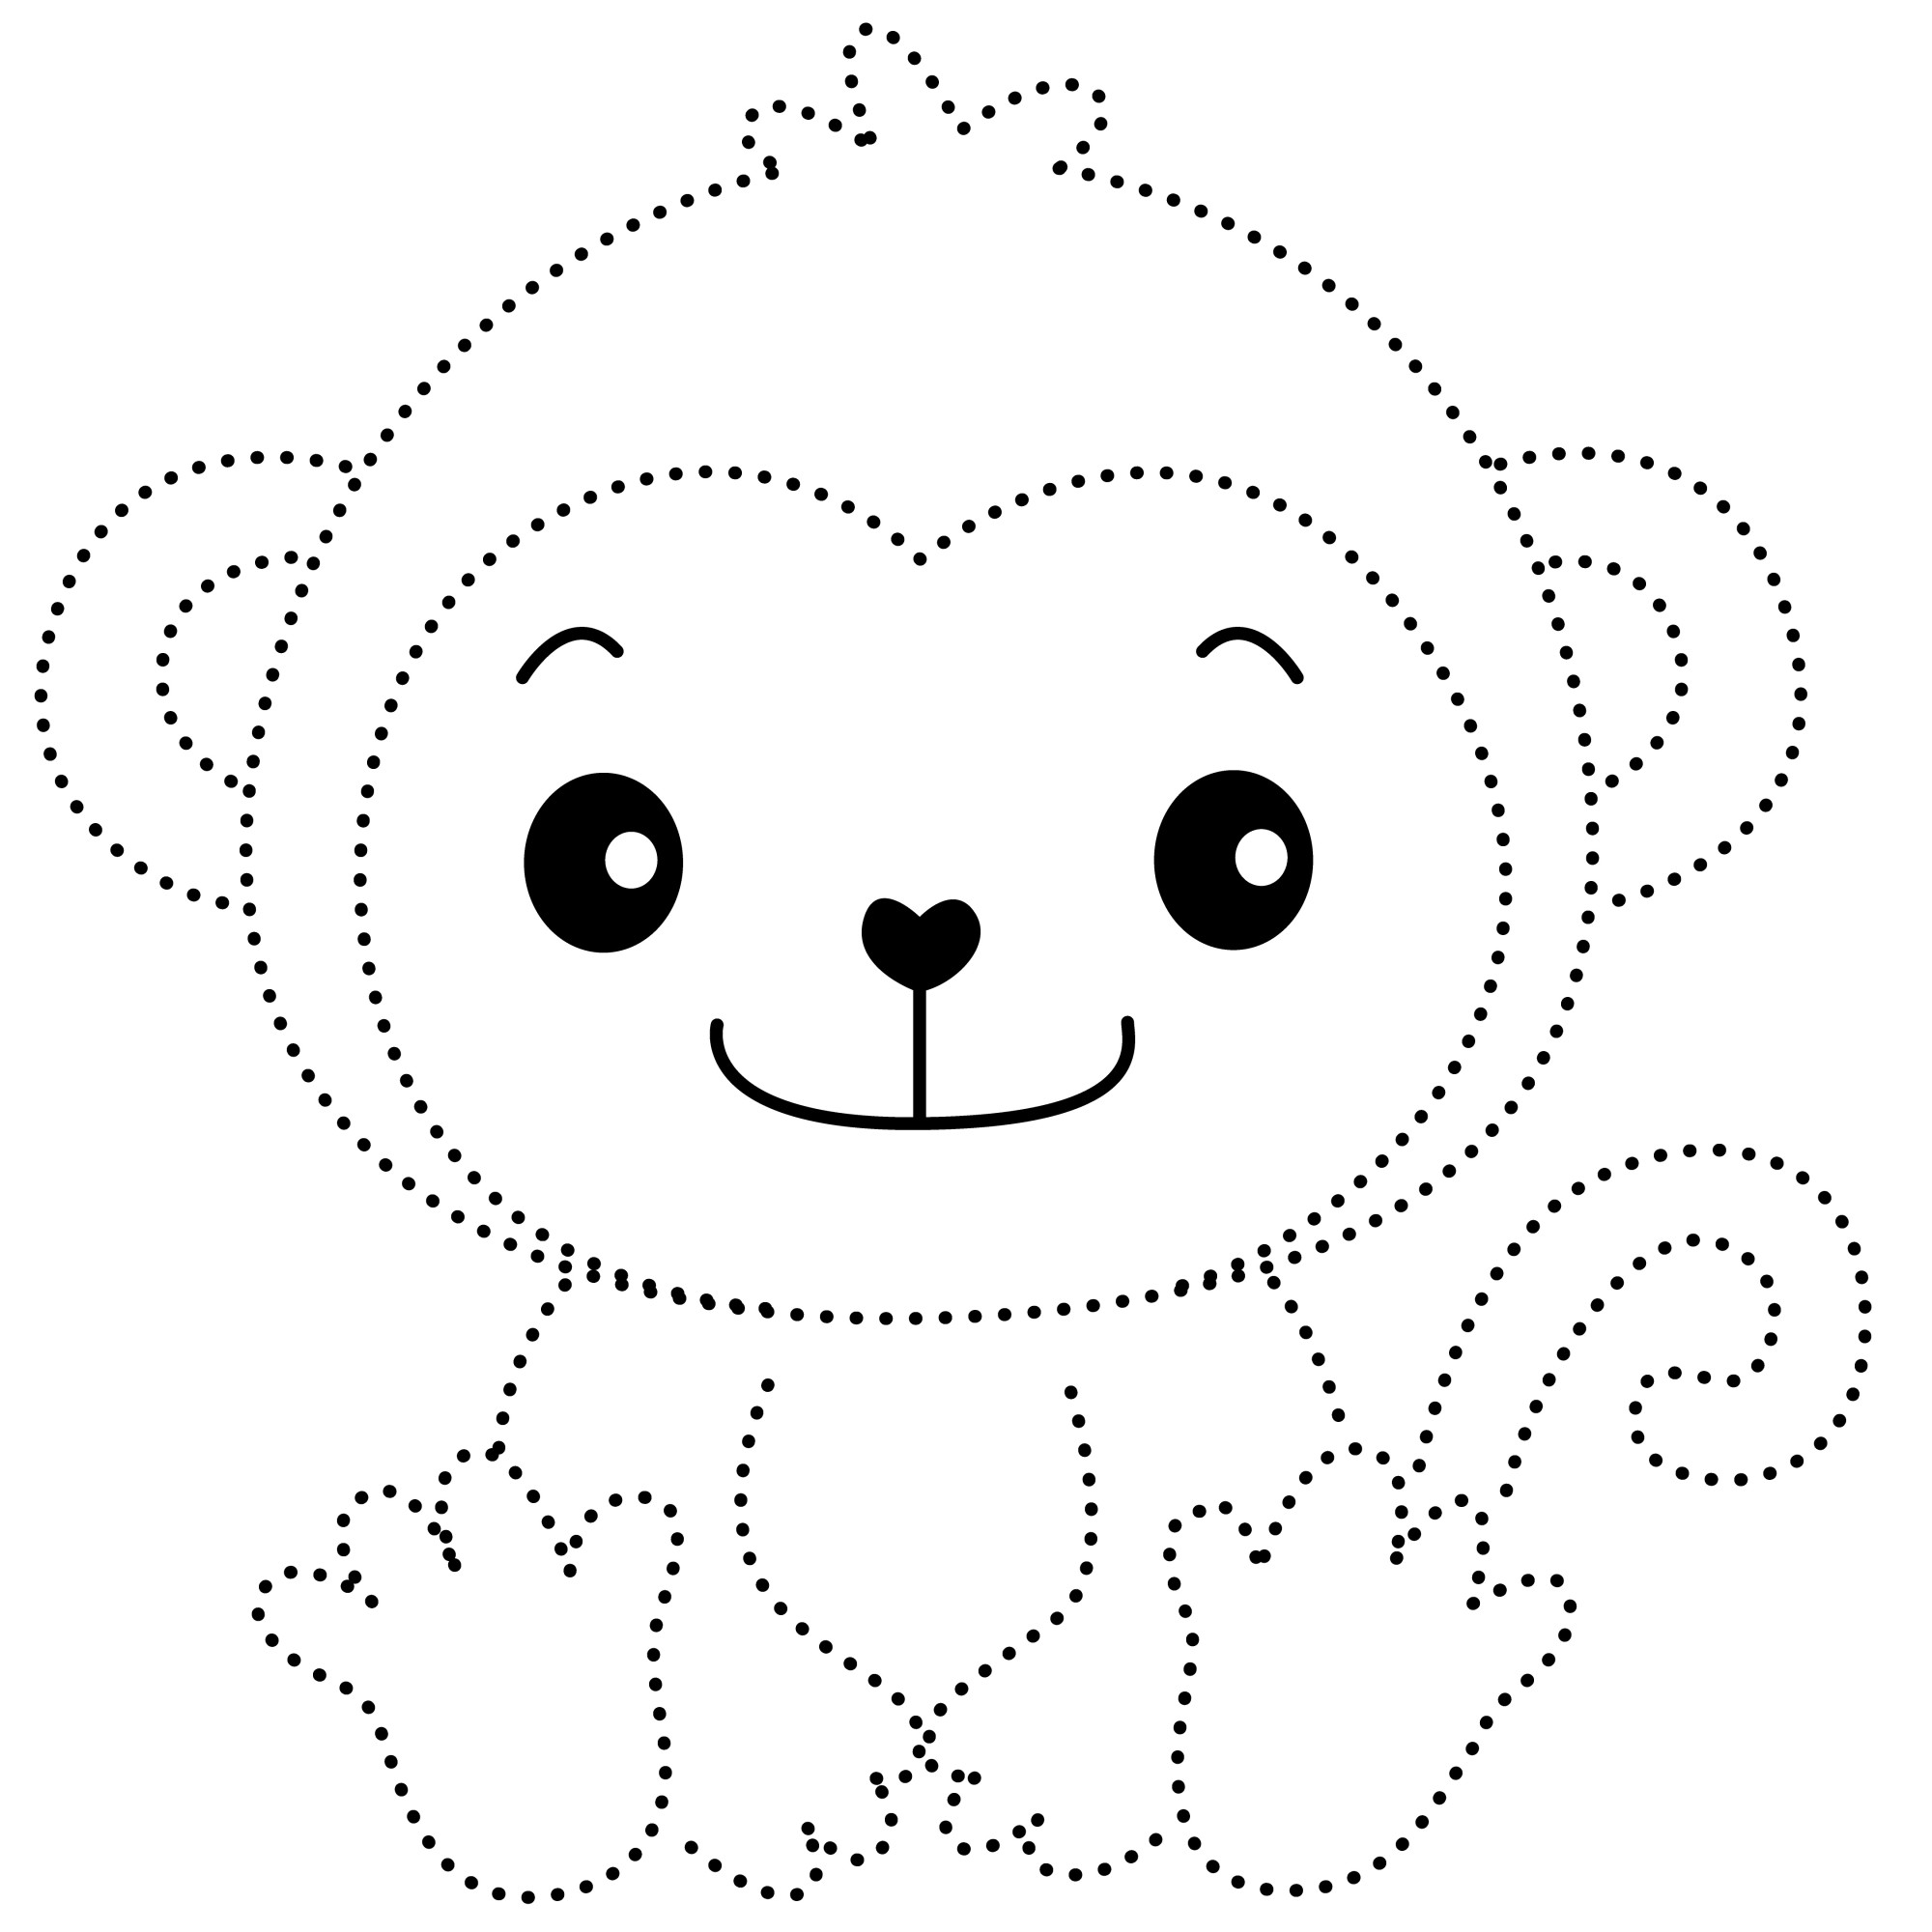 Раскраска для детей: маленькая веселая обезьянка по точкам